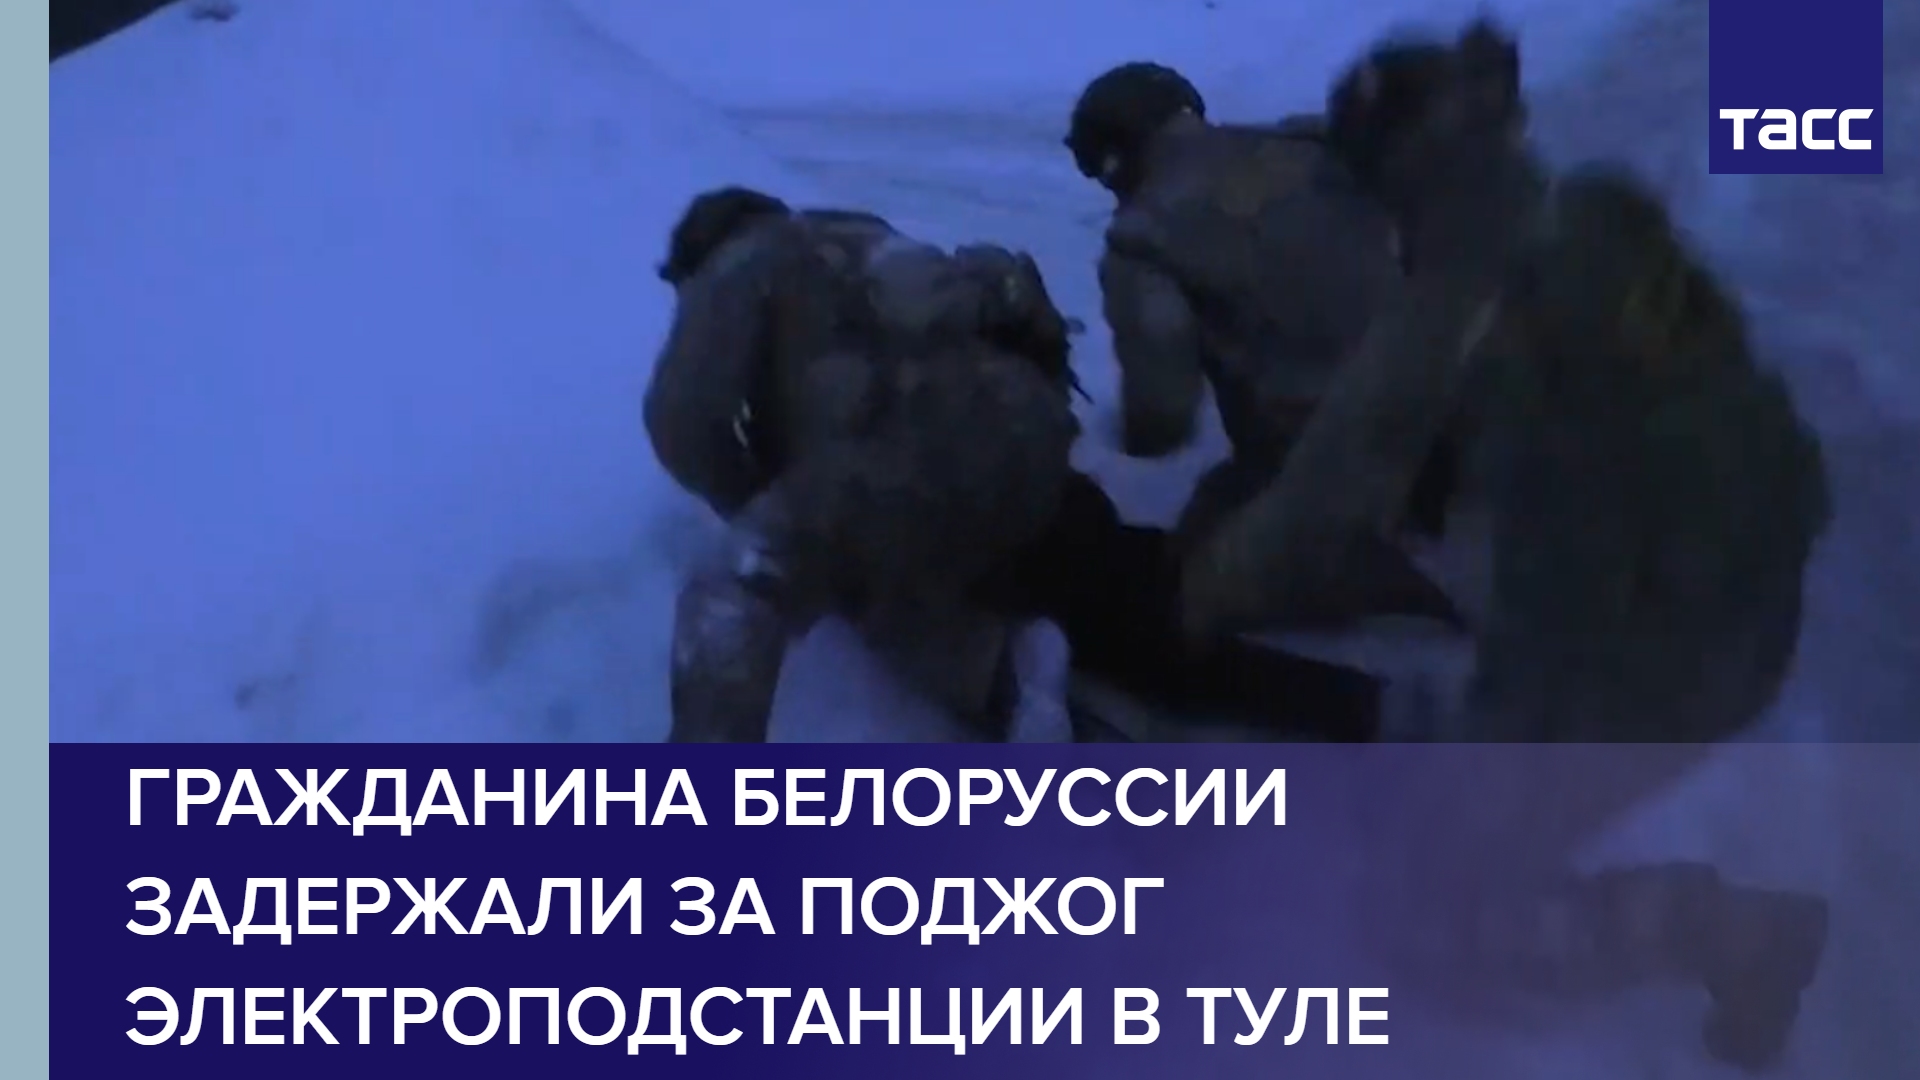 Гражданина Белоруссии задержали за поджог электроподстанции в Туле #shorts